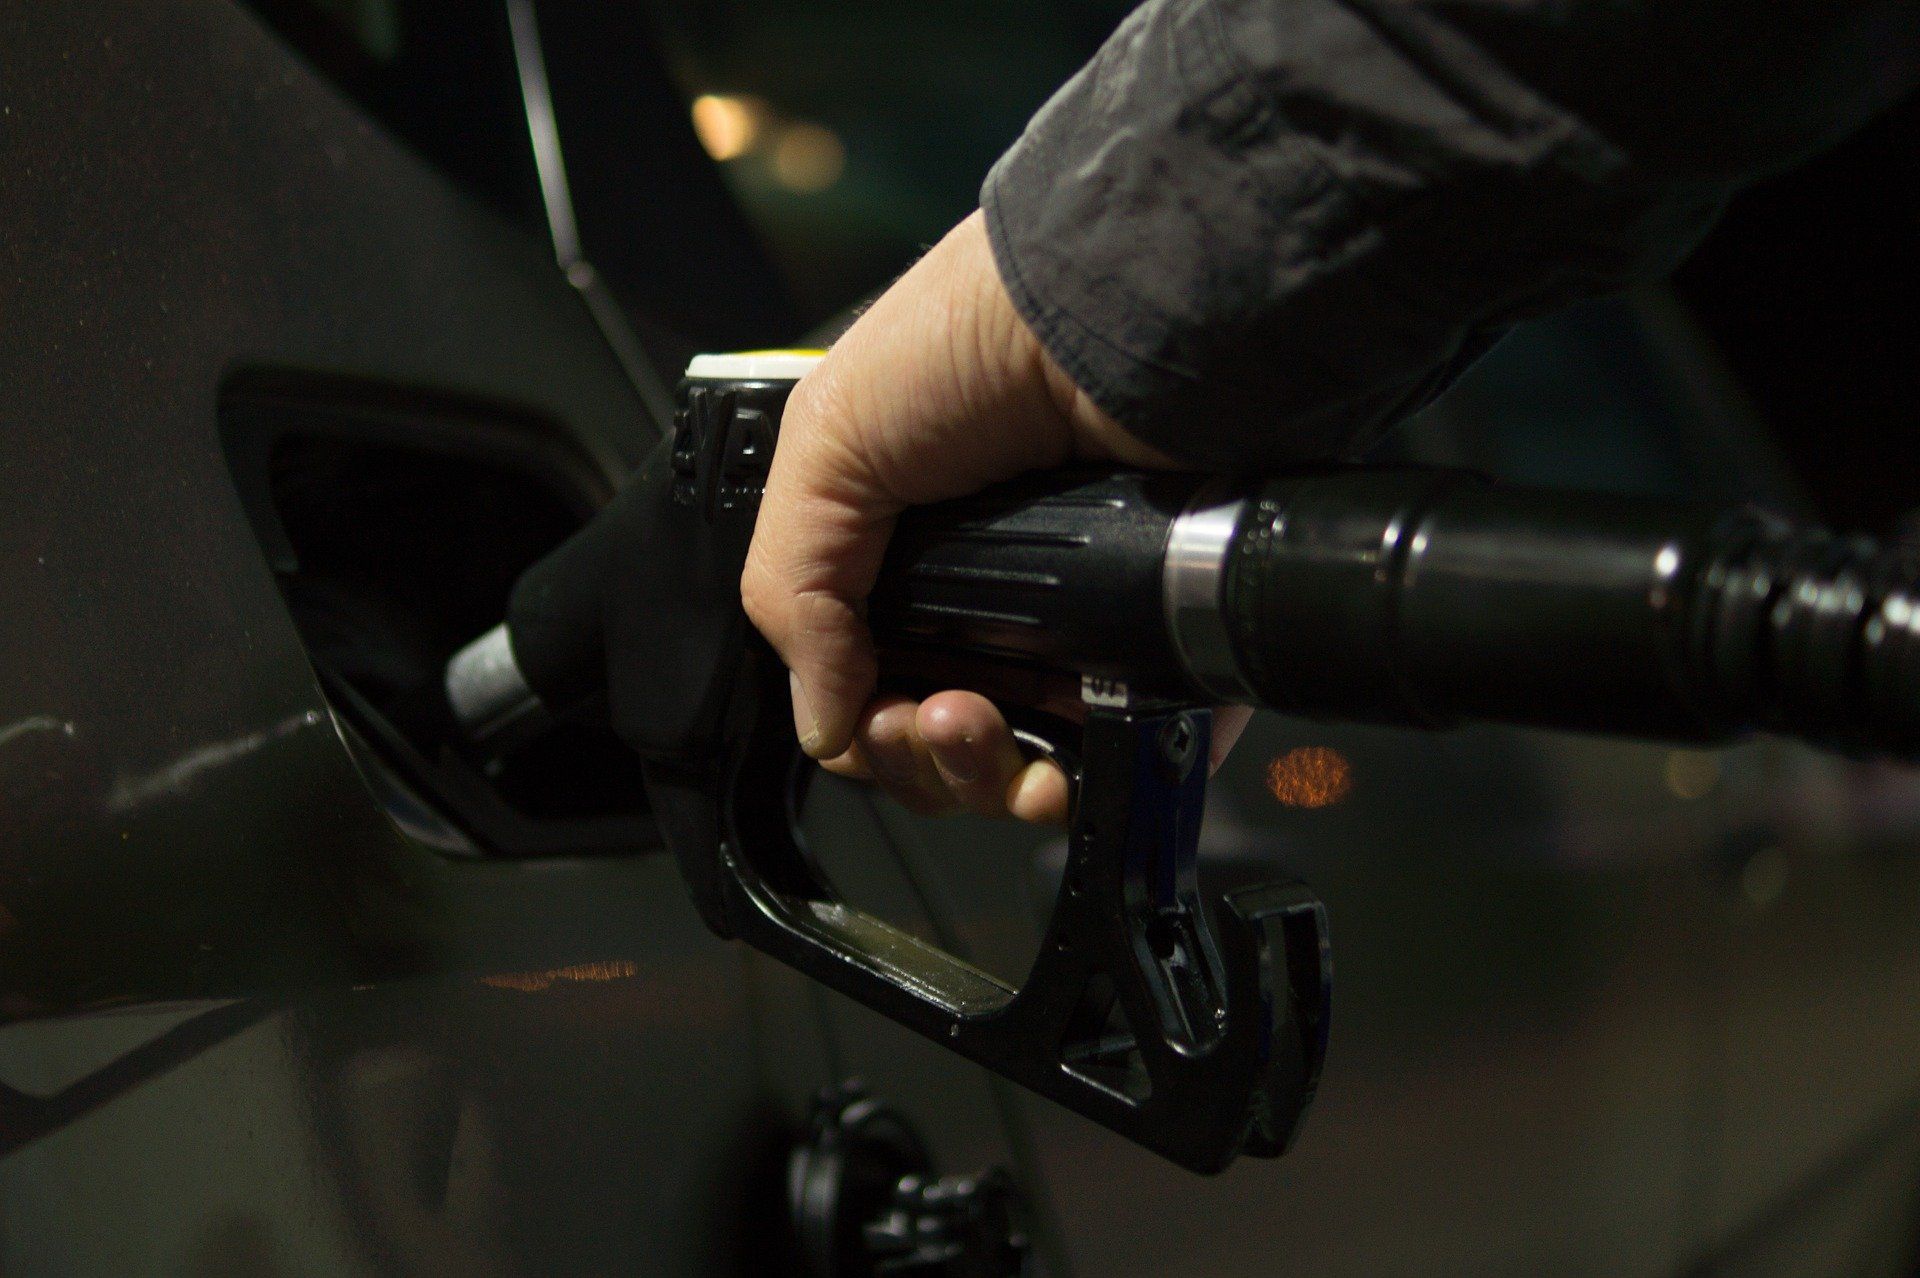 Fuel price July 14, 2022: Petrol Rs 96.72, diesel Rs 89.62 in Delhi